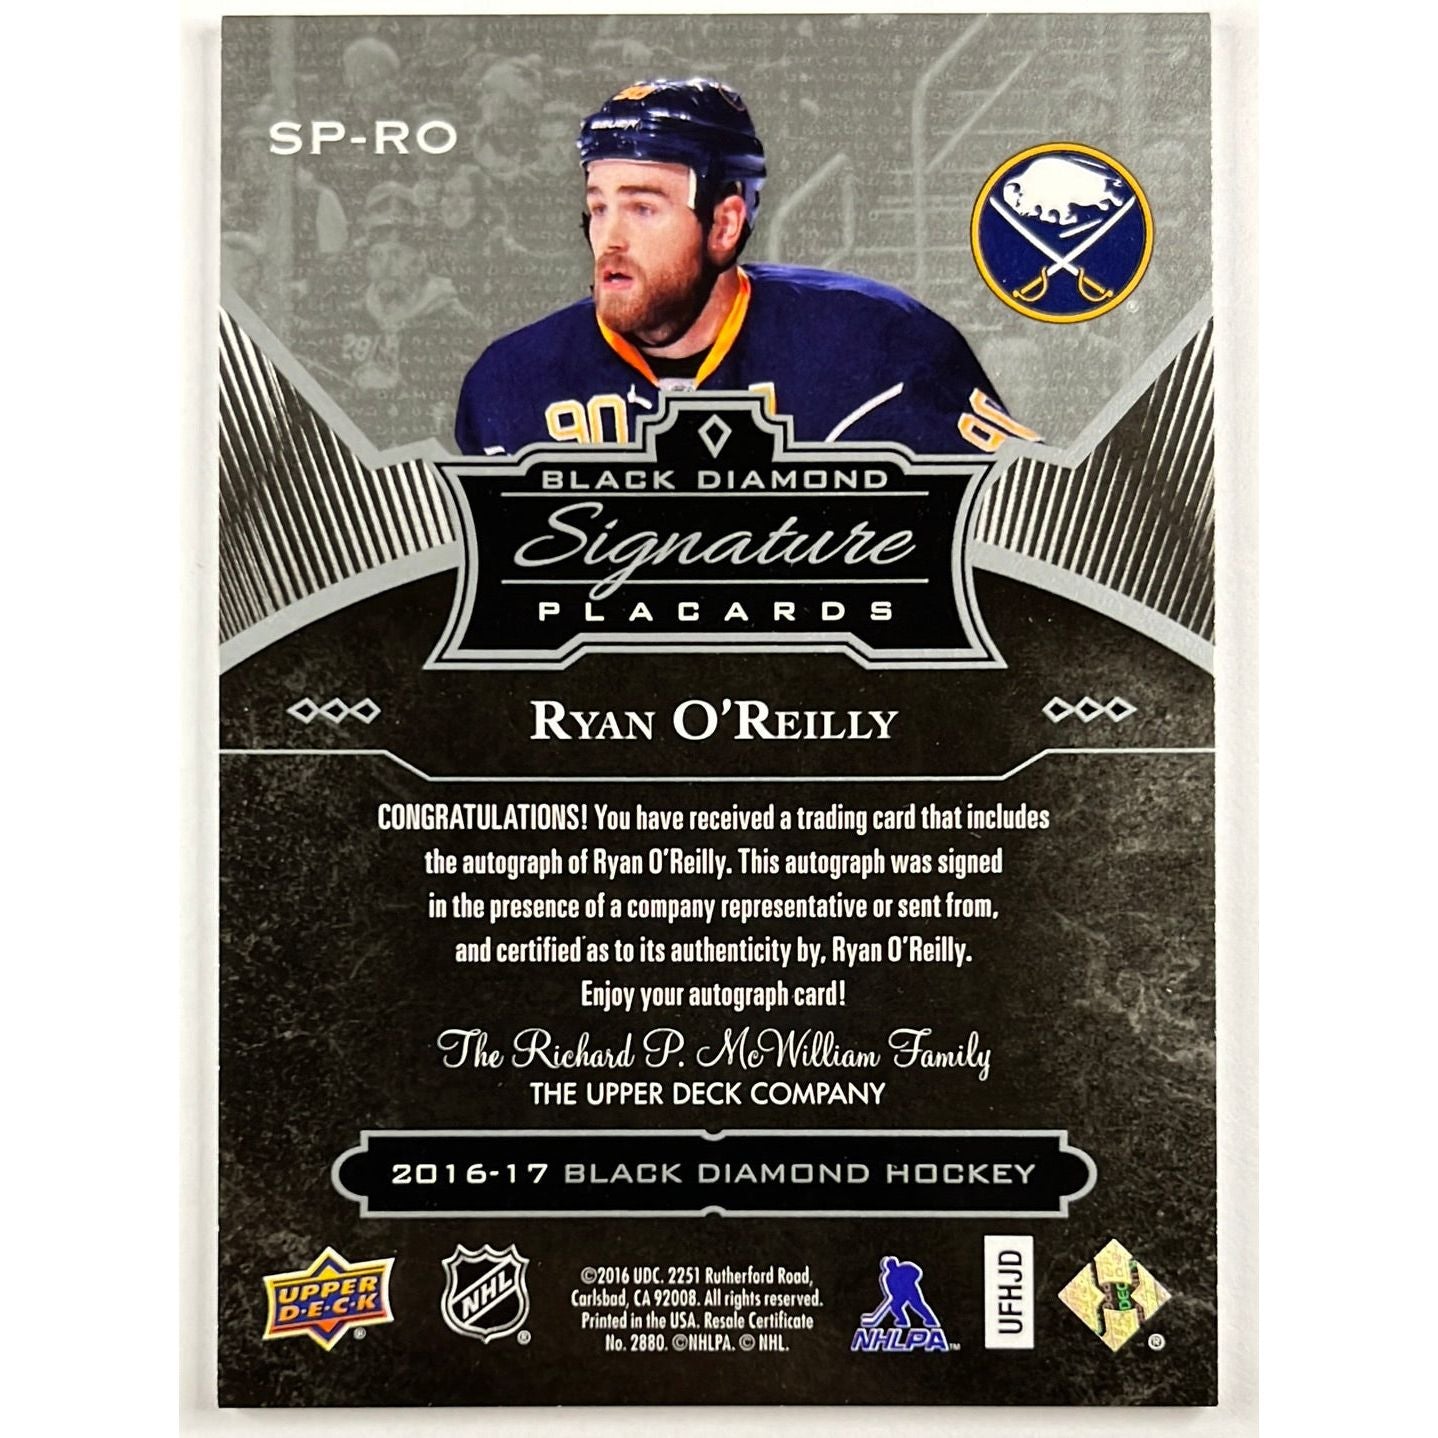 2016-17 Black Diamond Ryan O’Reilly Signature Placards